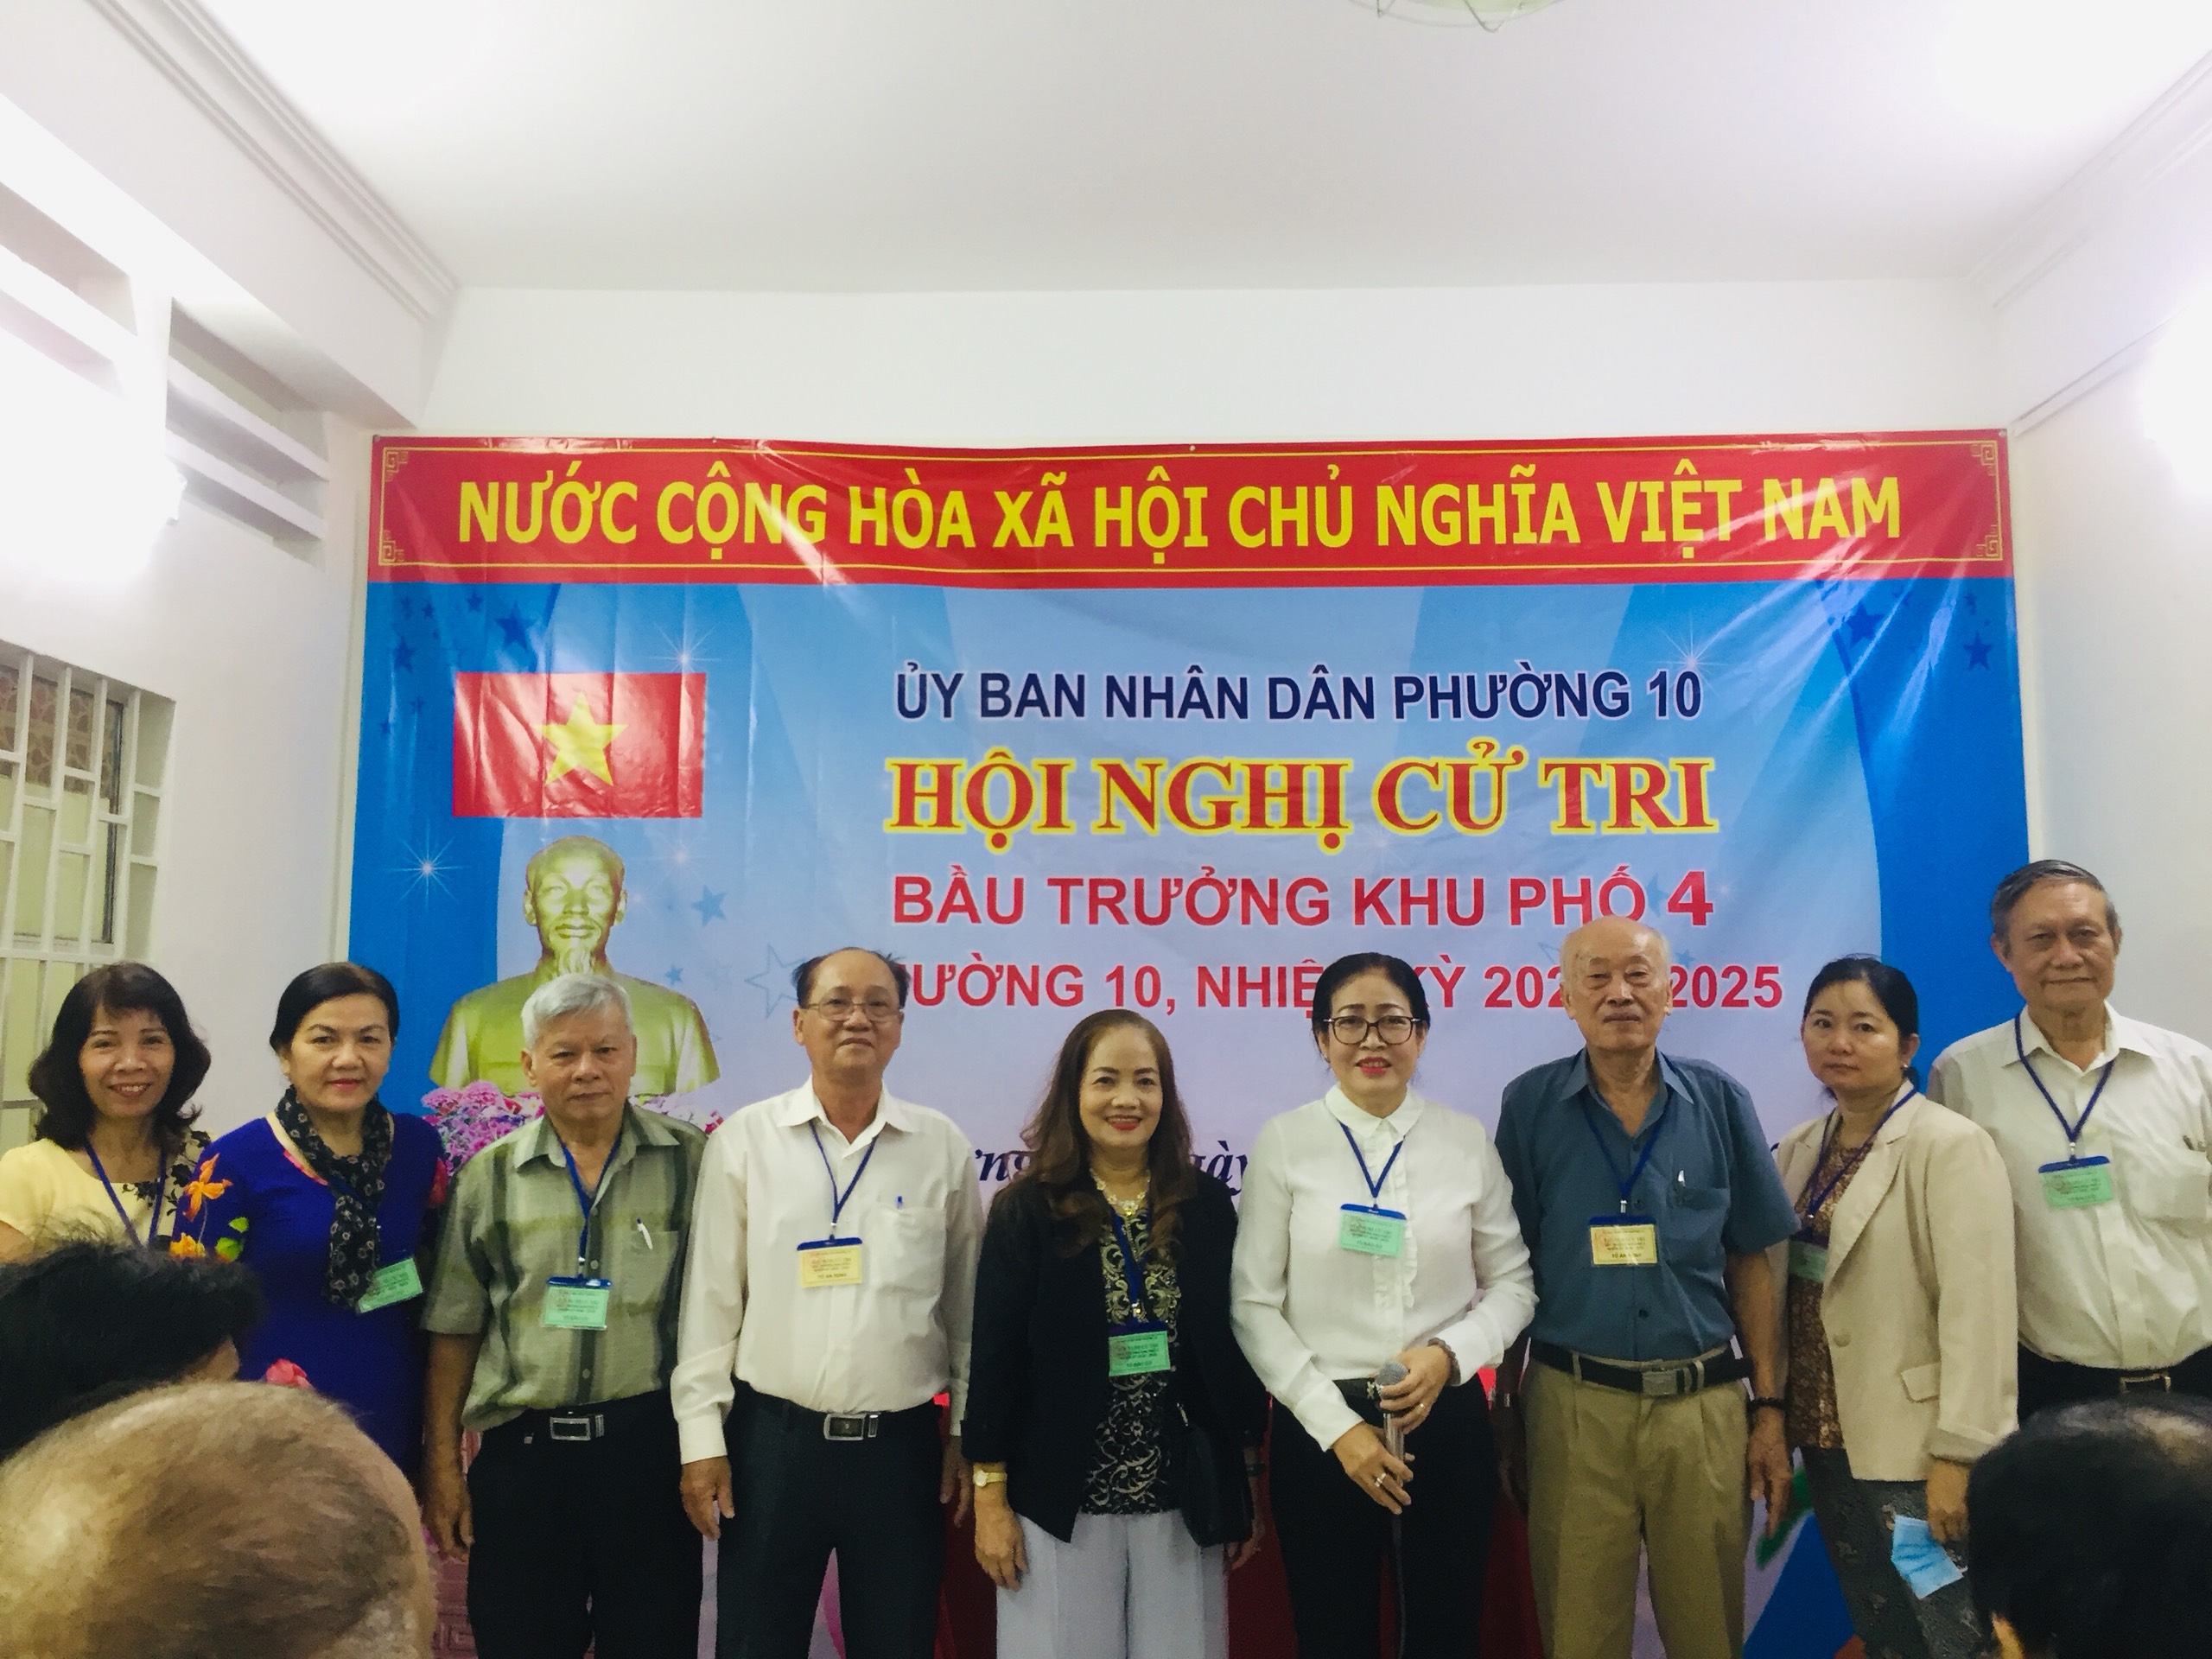 Phường 10 quận Tân Bình tổ chức bầu cử trưởng khu phố nhiệm kỳ 2020 – 2025